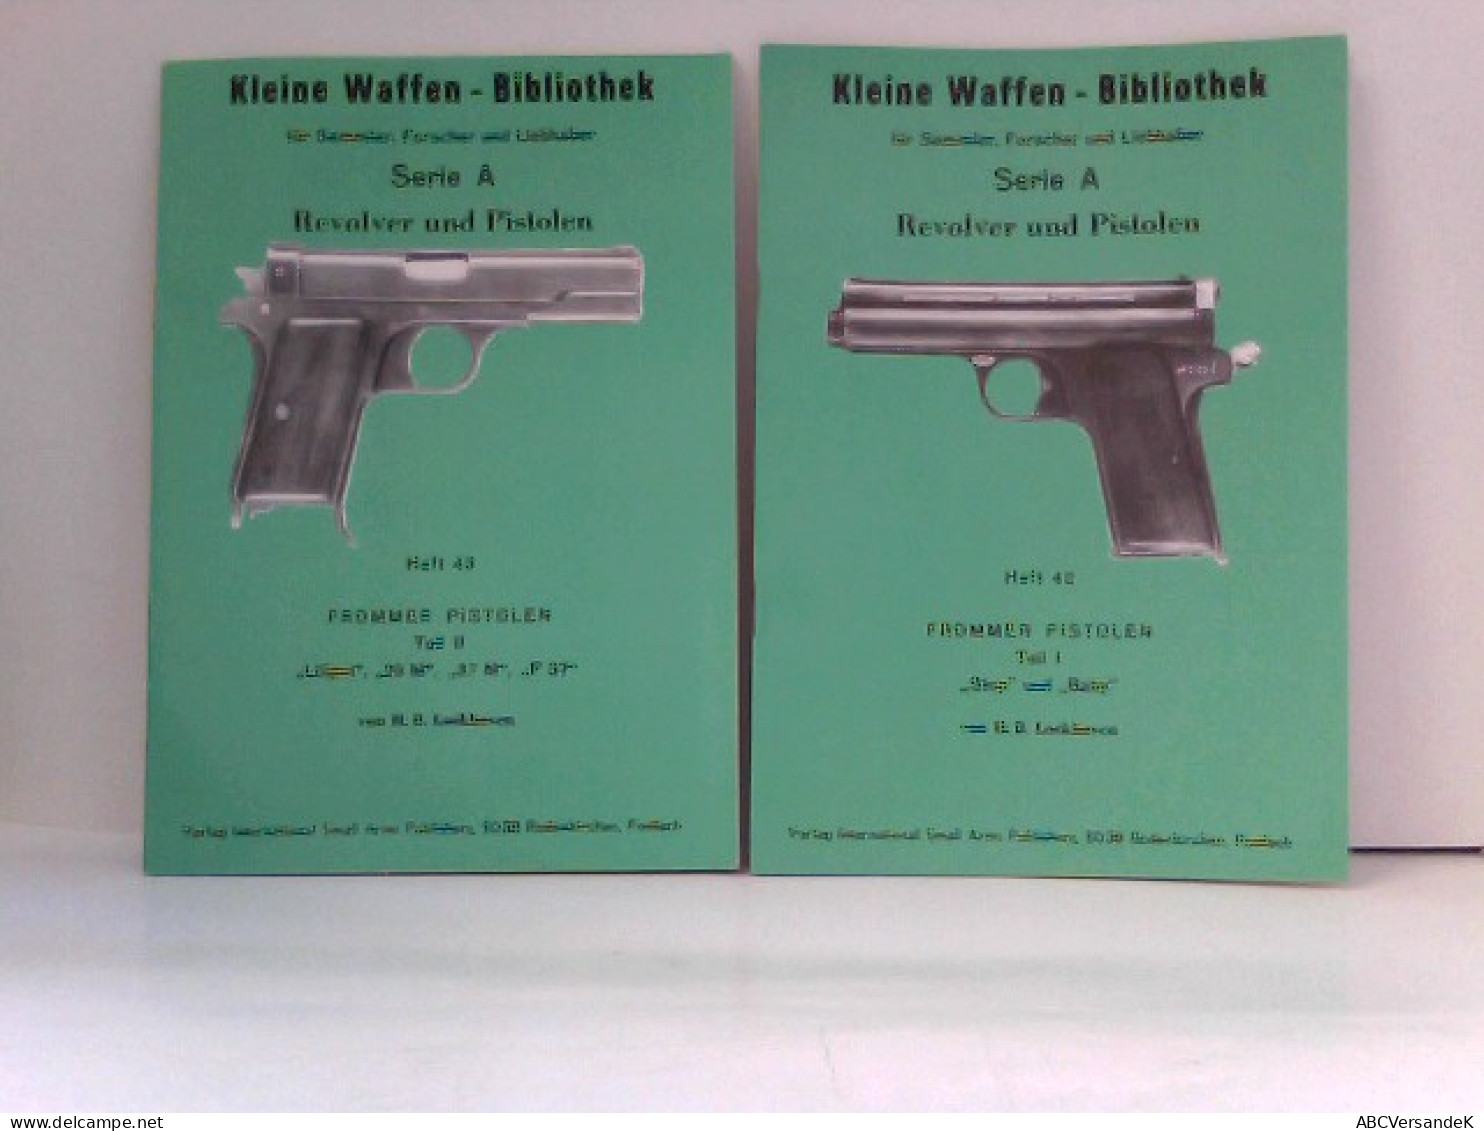 KONVOLUT Frommer Pistolen, Kleine Waffen - Bibliothek Für Sammler, Forscher Und Liebhaber - Heft 42 & Heft 43 - Militär & Polizei